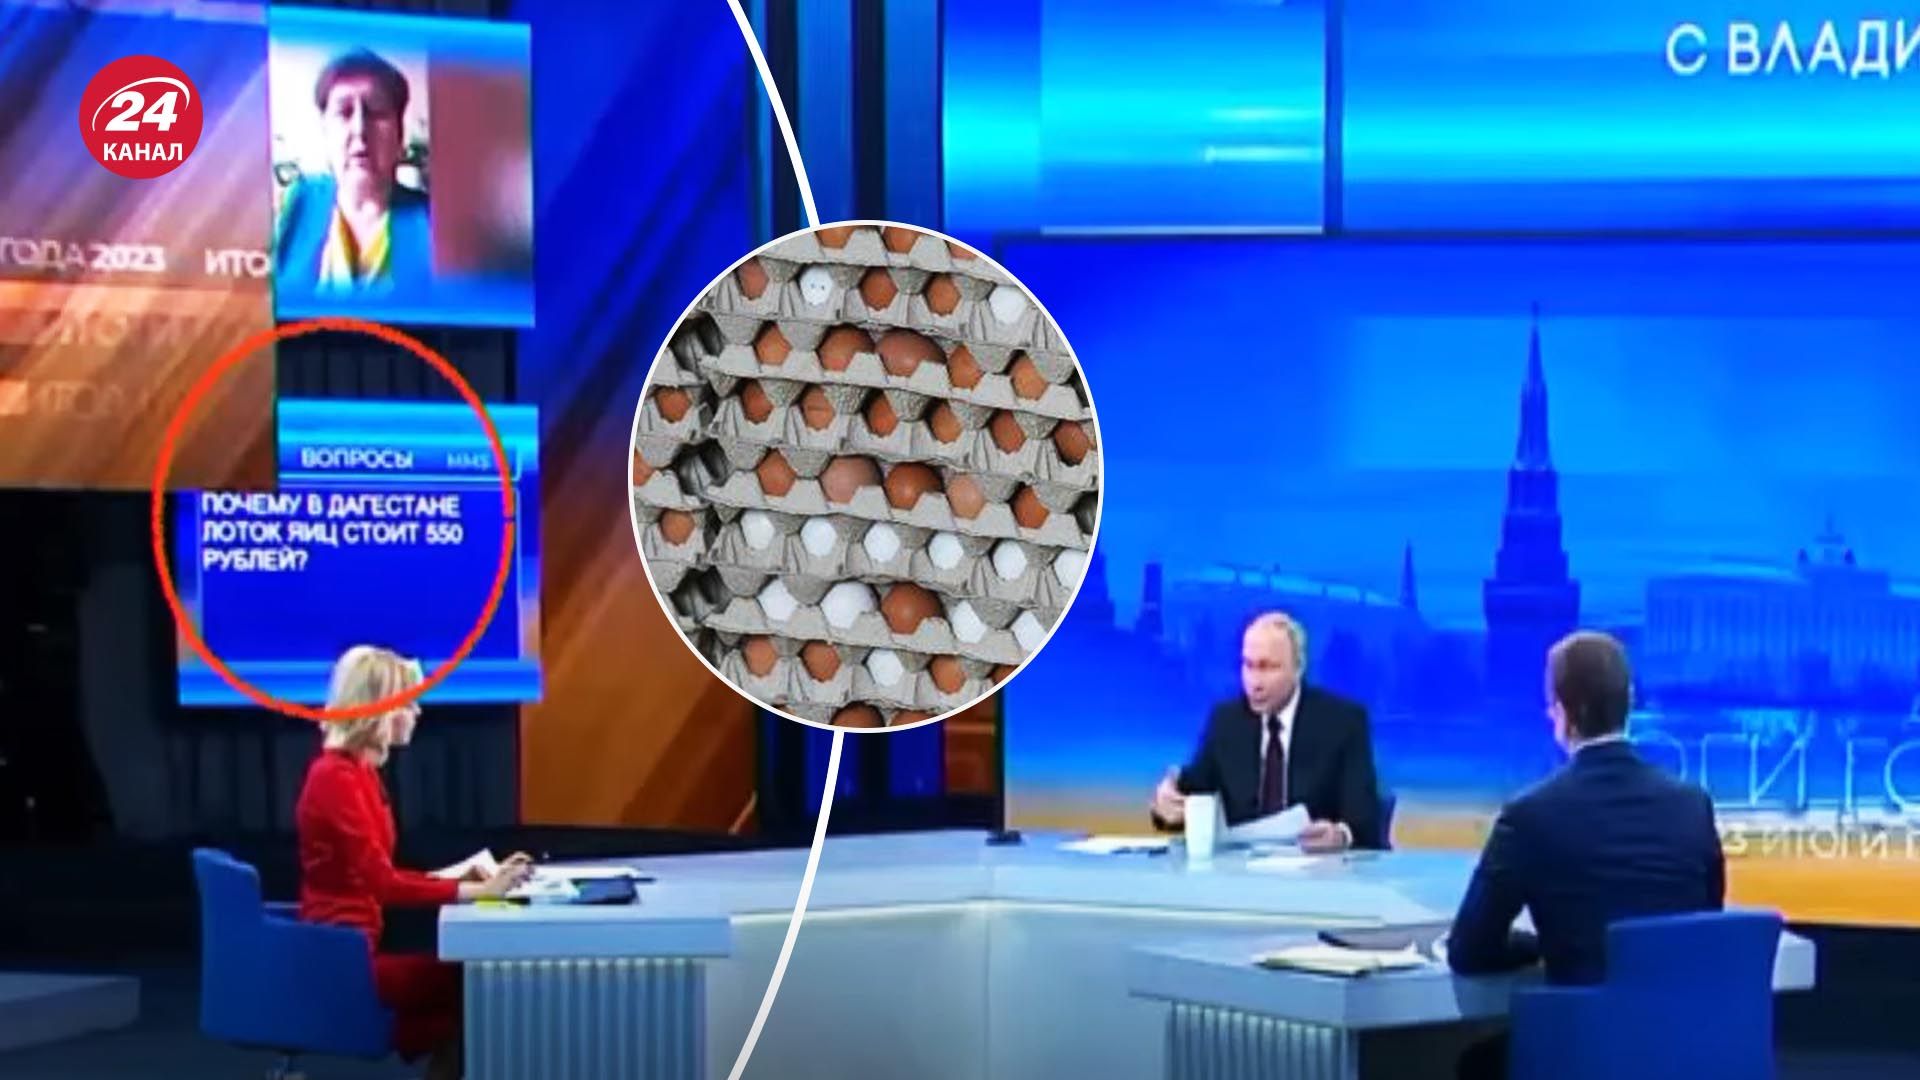 У Путина спросили о ценах на яйца - зачем его политтехнологи включили это в эфир - 24 Канал